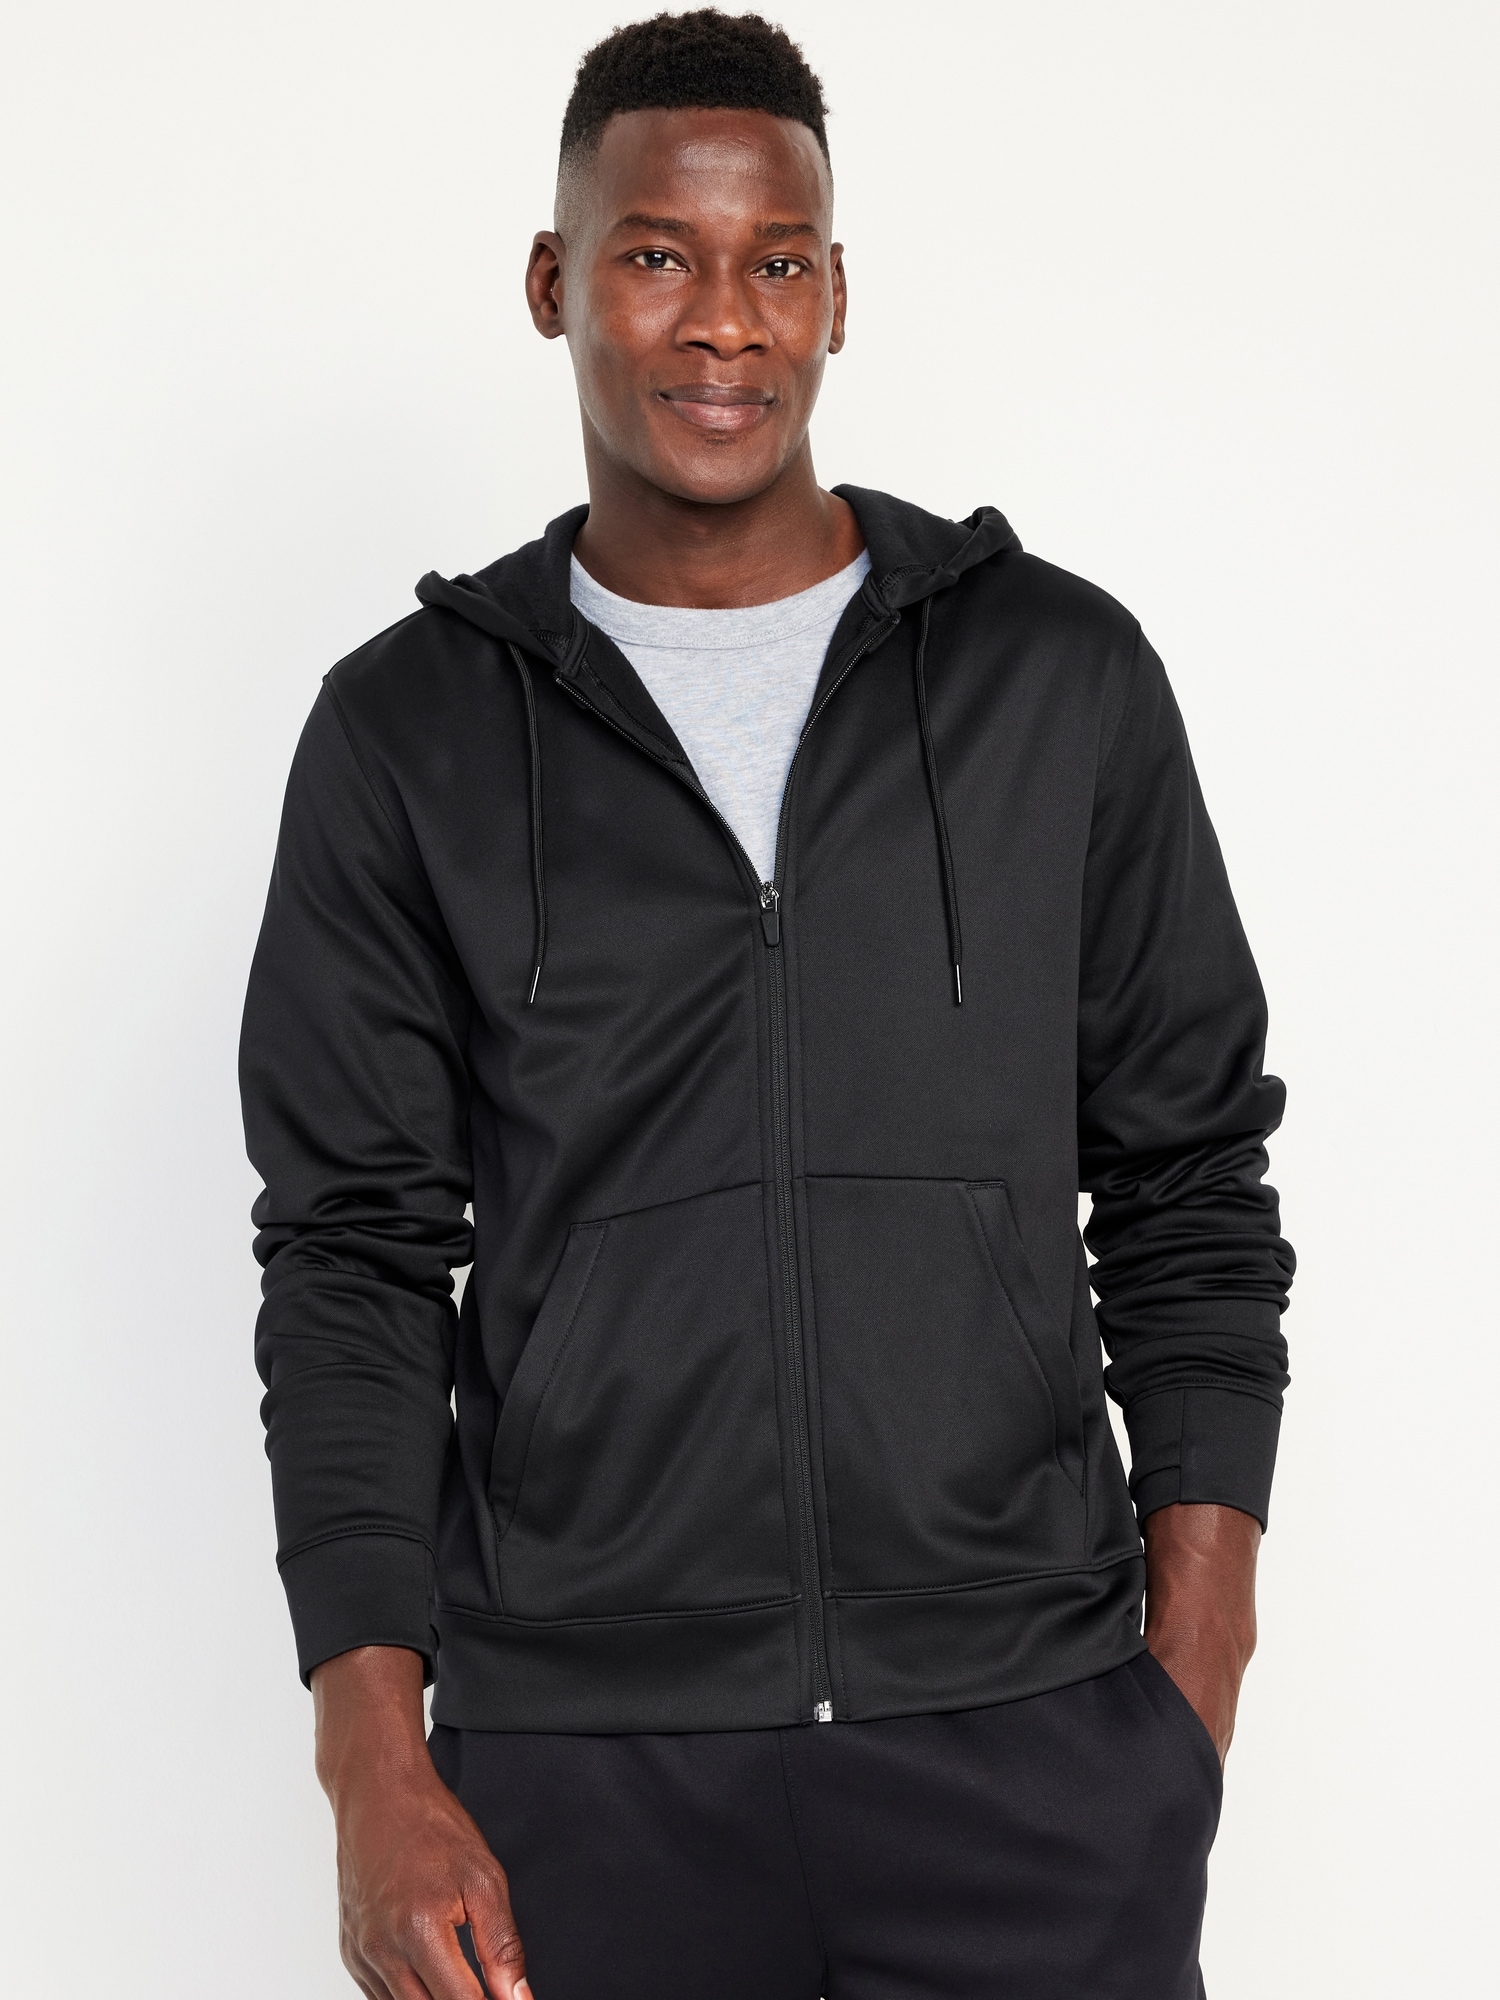 Hanes Men's Sport Performance Fleece Full-Zip Hoodie, Black, S